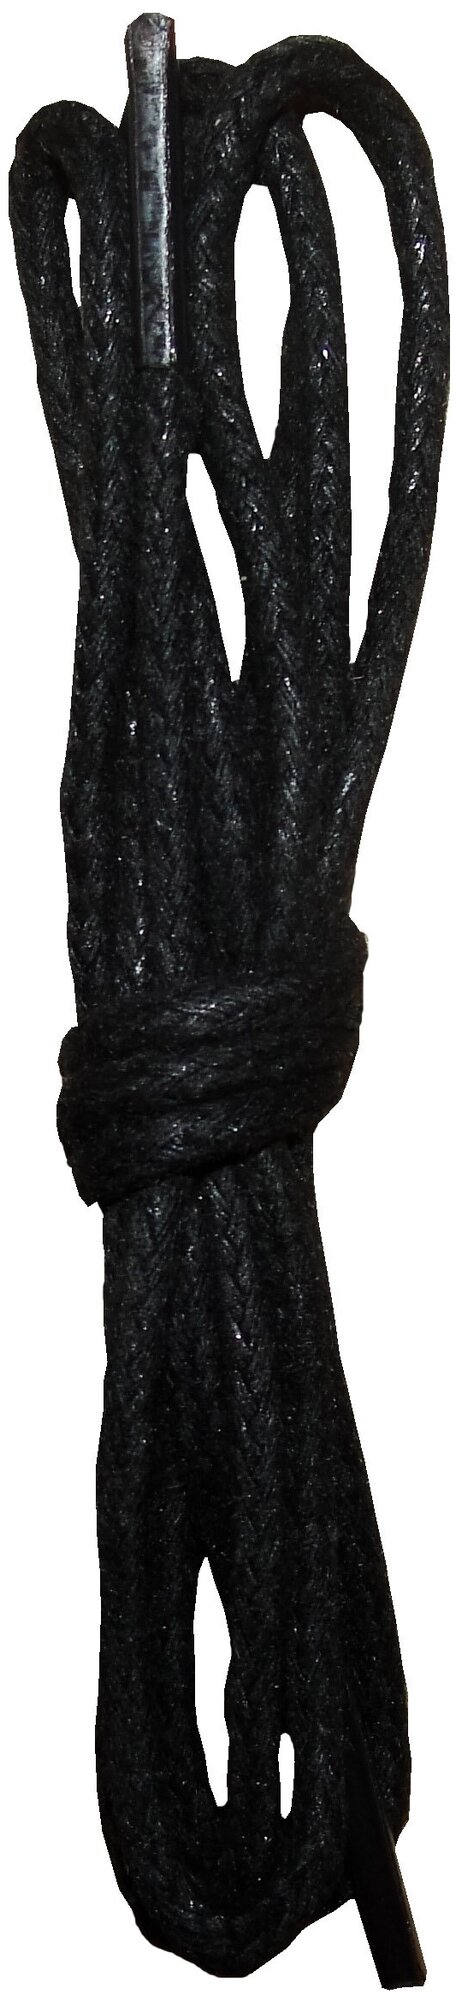 Шнурки орион 150см тонкие черные с пропиткой